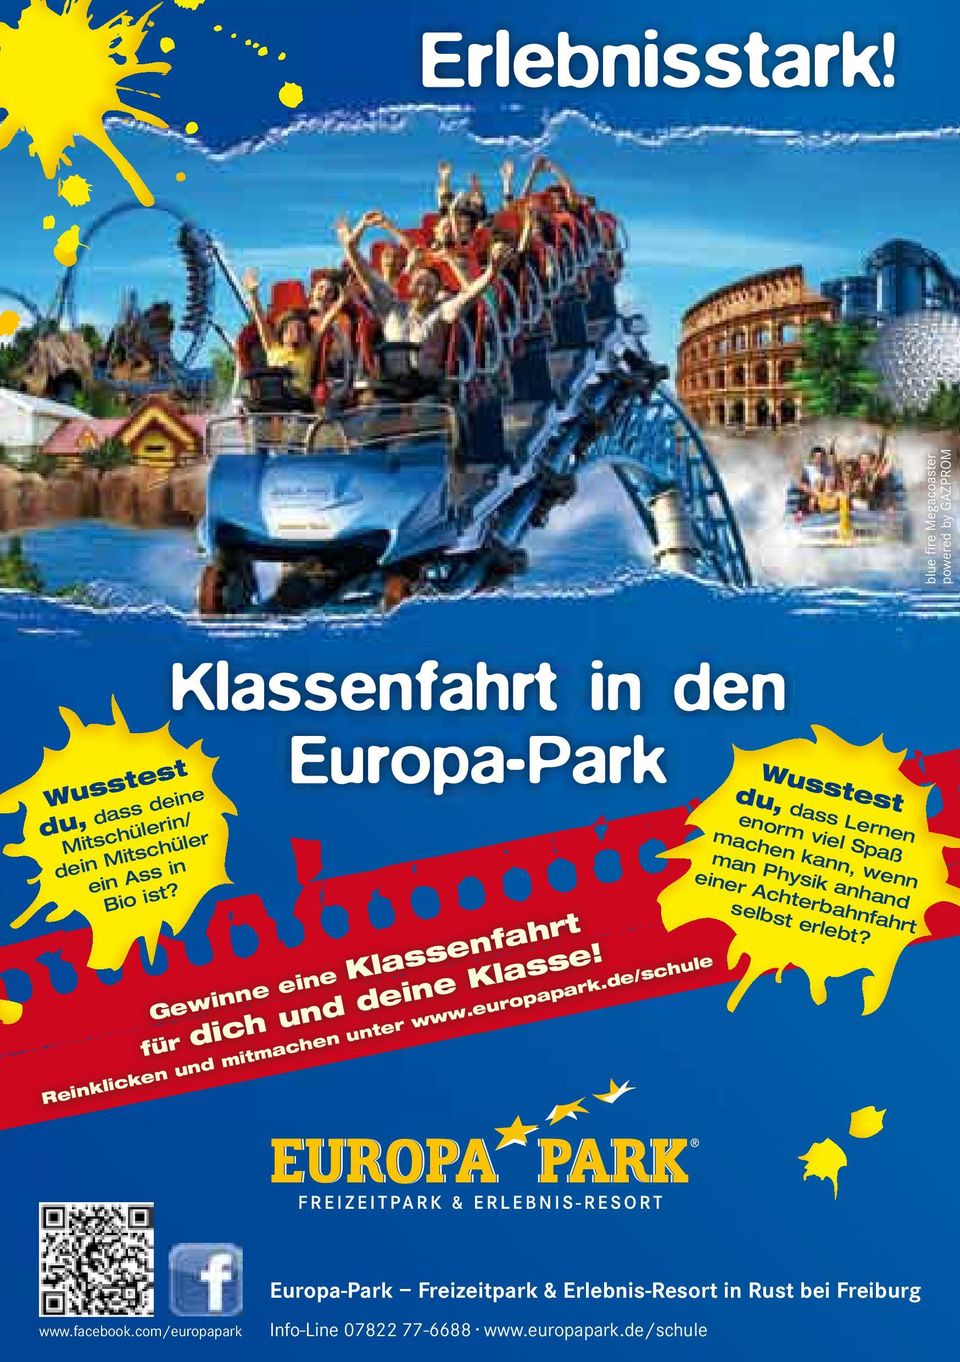 Klassenfahrt in den Europa-Park Gewinne eine Klassenfahrt für dich und deine Klasse! Reinklicken und mitmachen unter www.europapark.